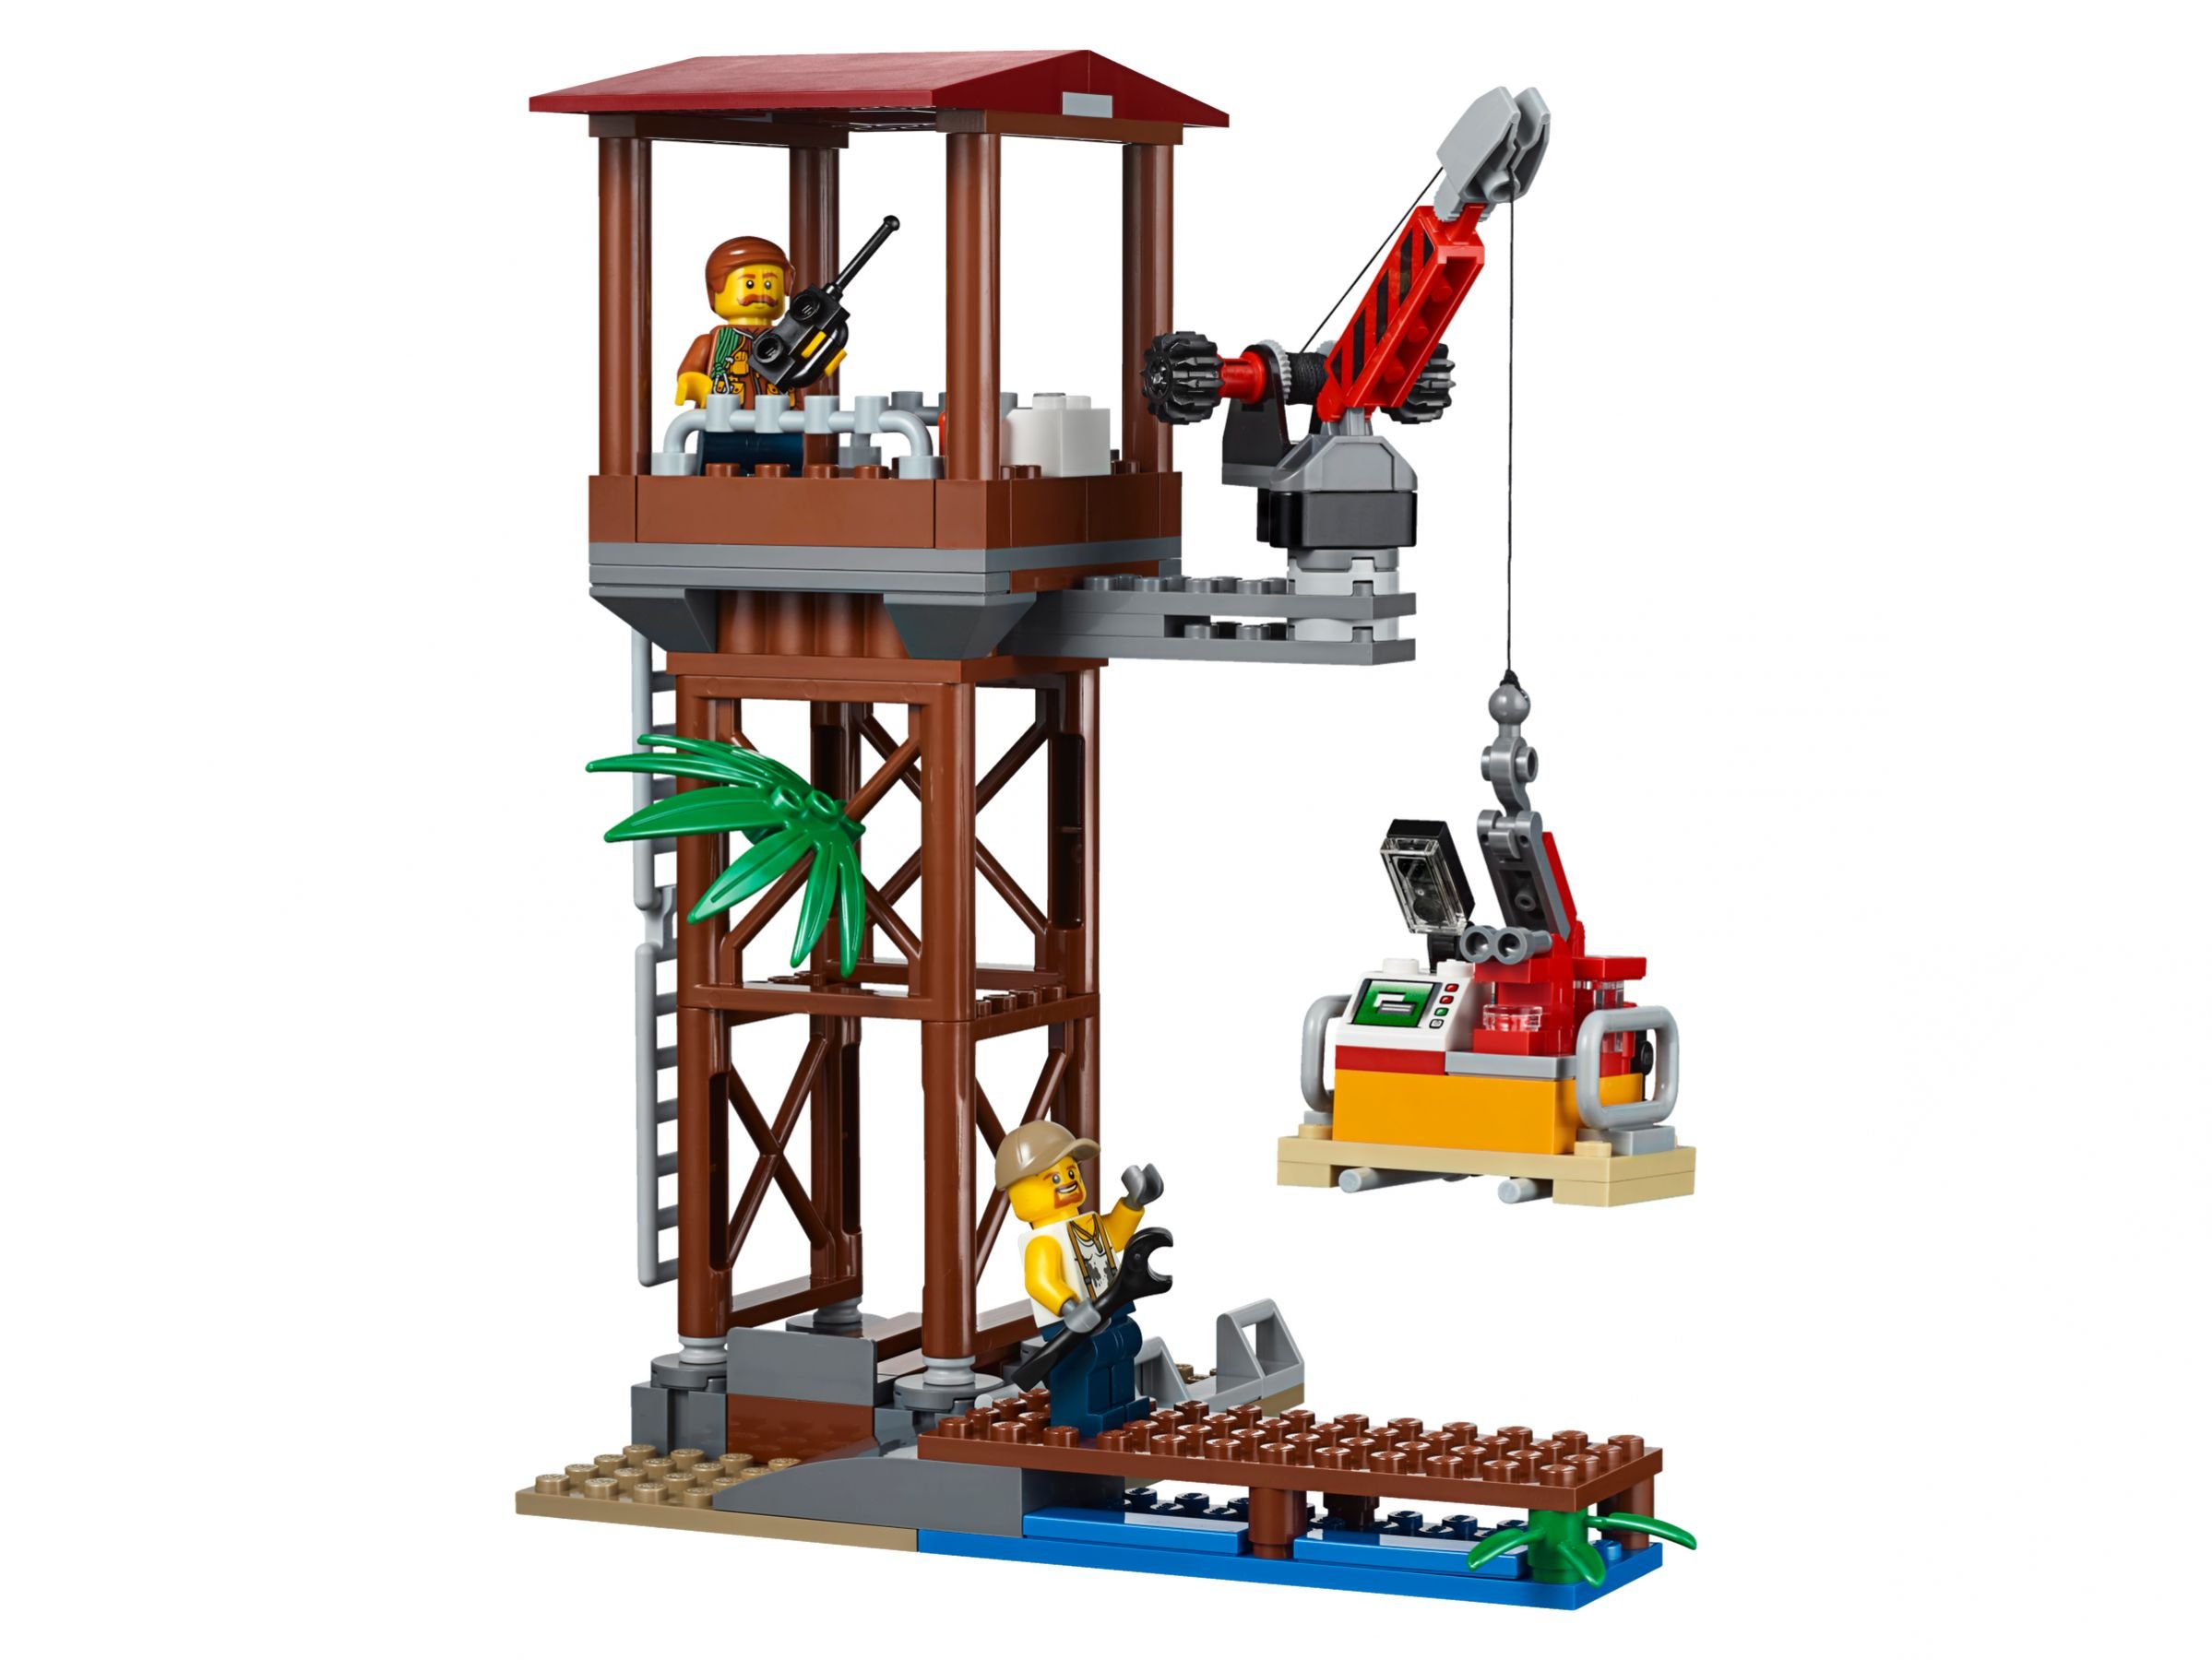 LEGO City 60162 Dschungel-Versorgungshubschrauber LEGO_60162_alt4.jpg